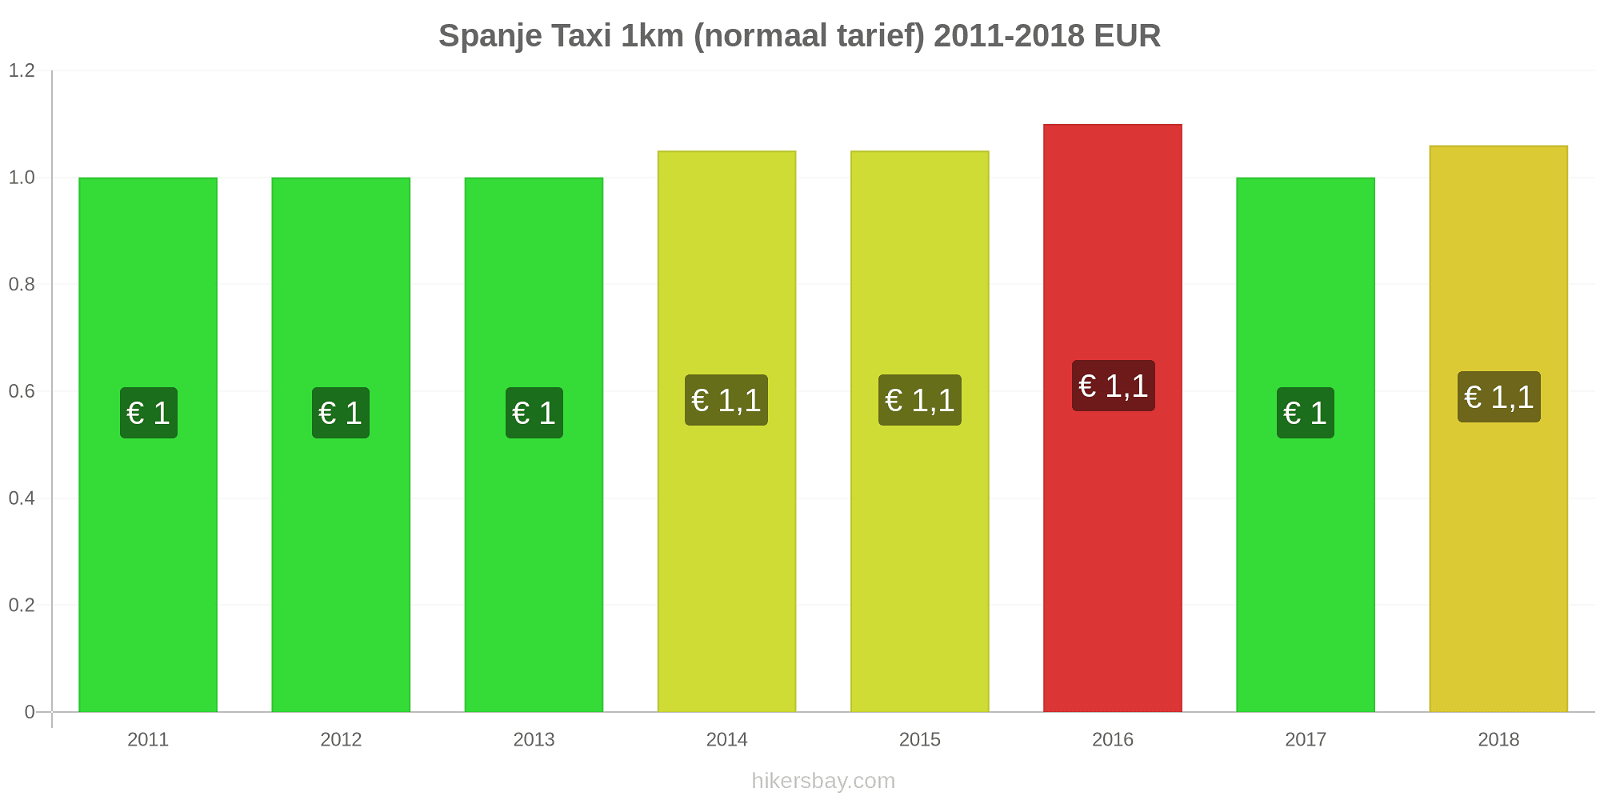 Spanje prijswijzigingen Taxi 1km (normaal tarief) hikersbay.com